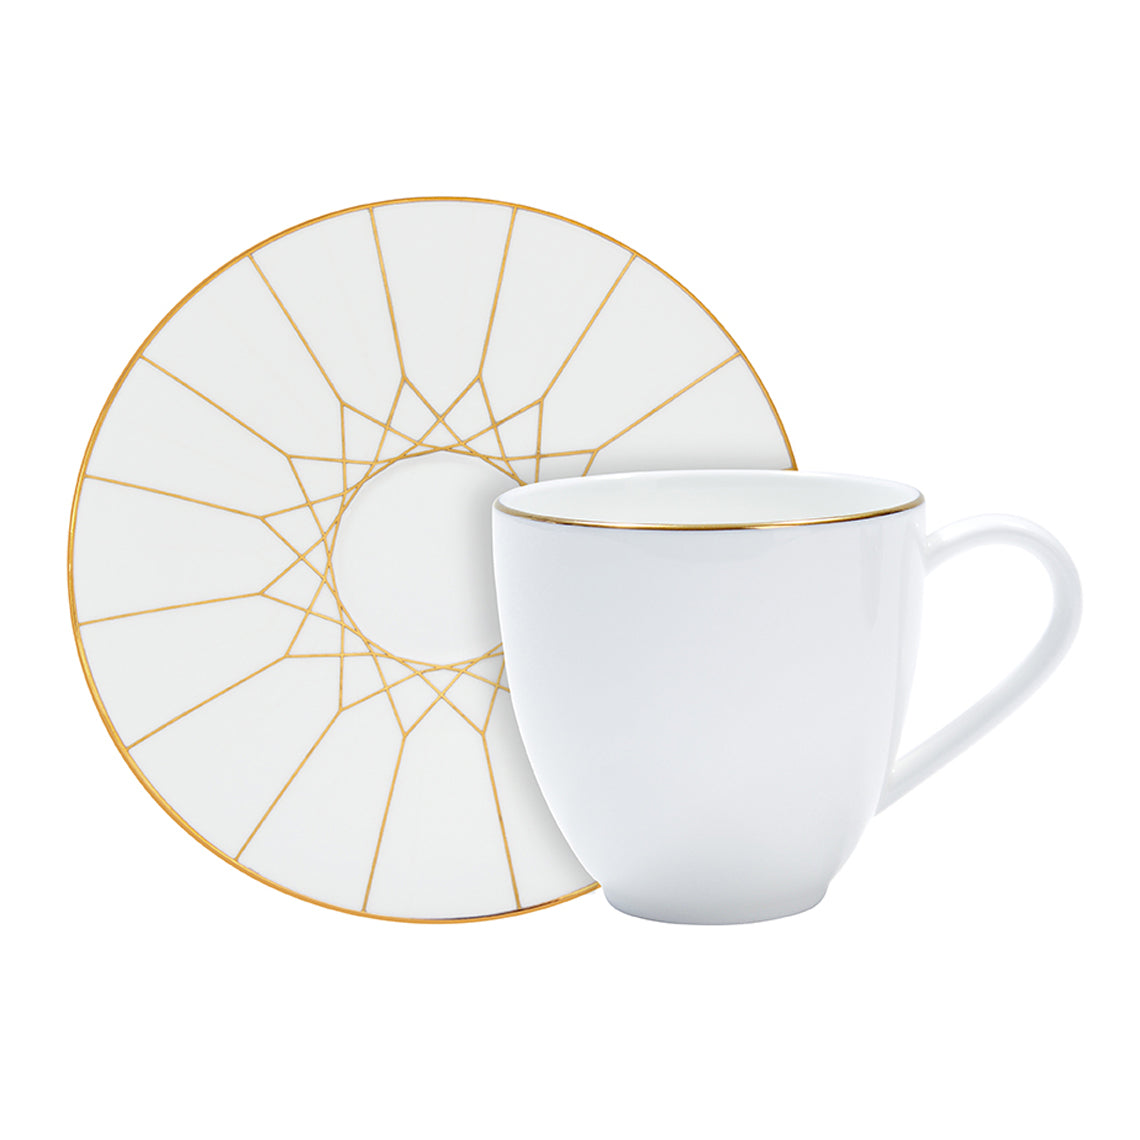 Prouna Gem Cut Gold Espresso Cup & Saucer White Background Photo